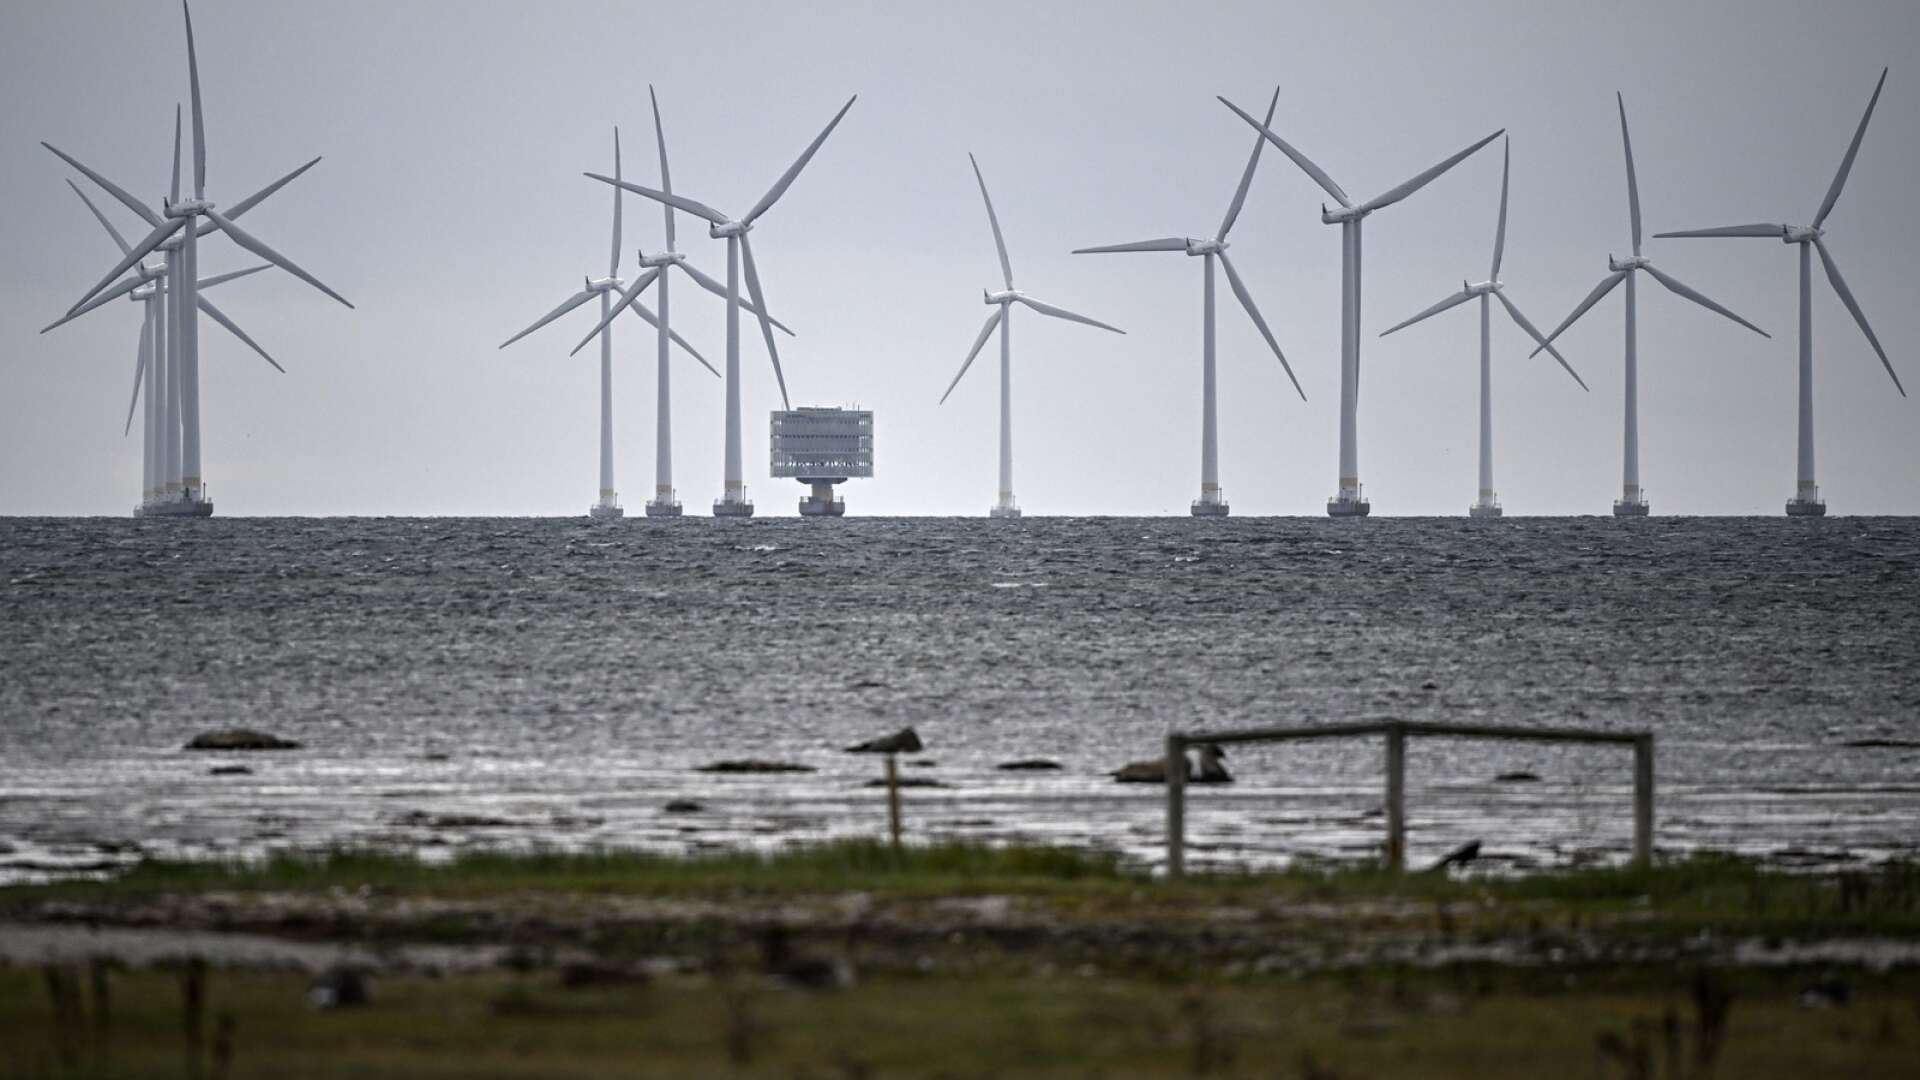 Detta är en bild på de havsbaserade vindkraftverken i Lillgrund vindkraftpark utanför Bunkeflostrand söder om Öresundsbron. Lillgrund består av 48 vindkraftverk med en höjd på 115 meter. Toppeffekten för den havsbaserade vindkraftparken är 110 MW. Ambitionen med satsningen i Vänern är en eller två parker som totalt ger nästan tio gånger så stor effekt. 